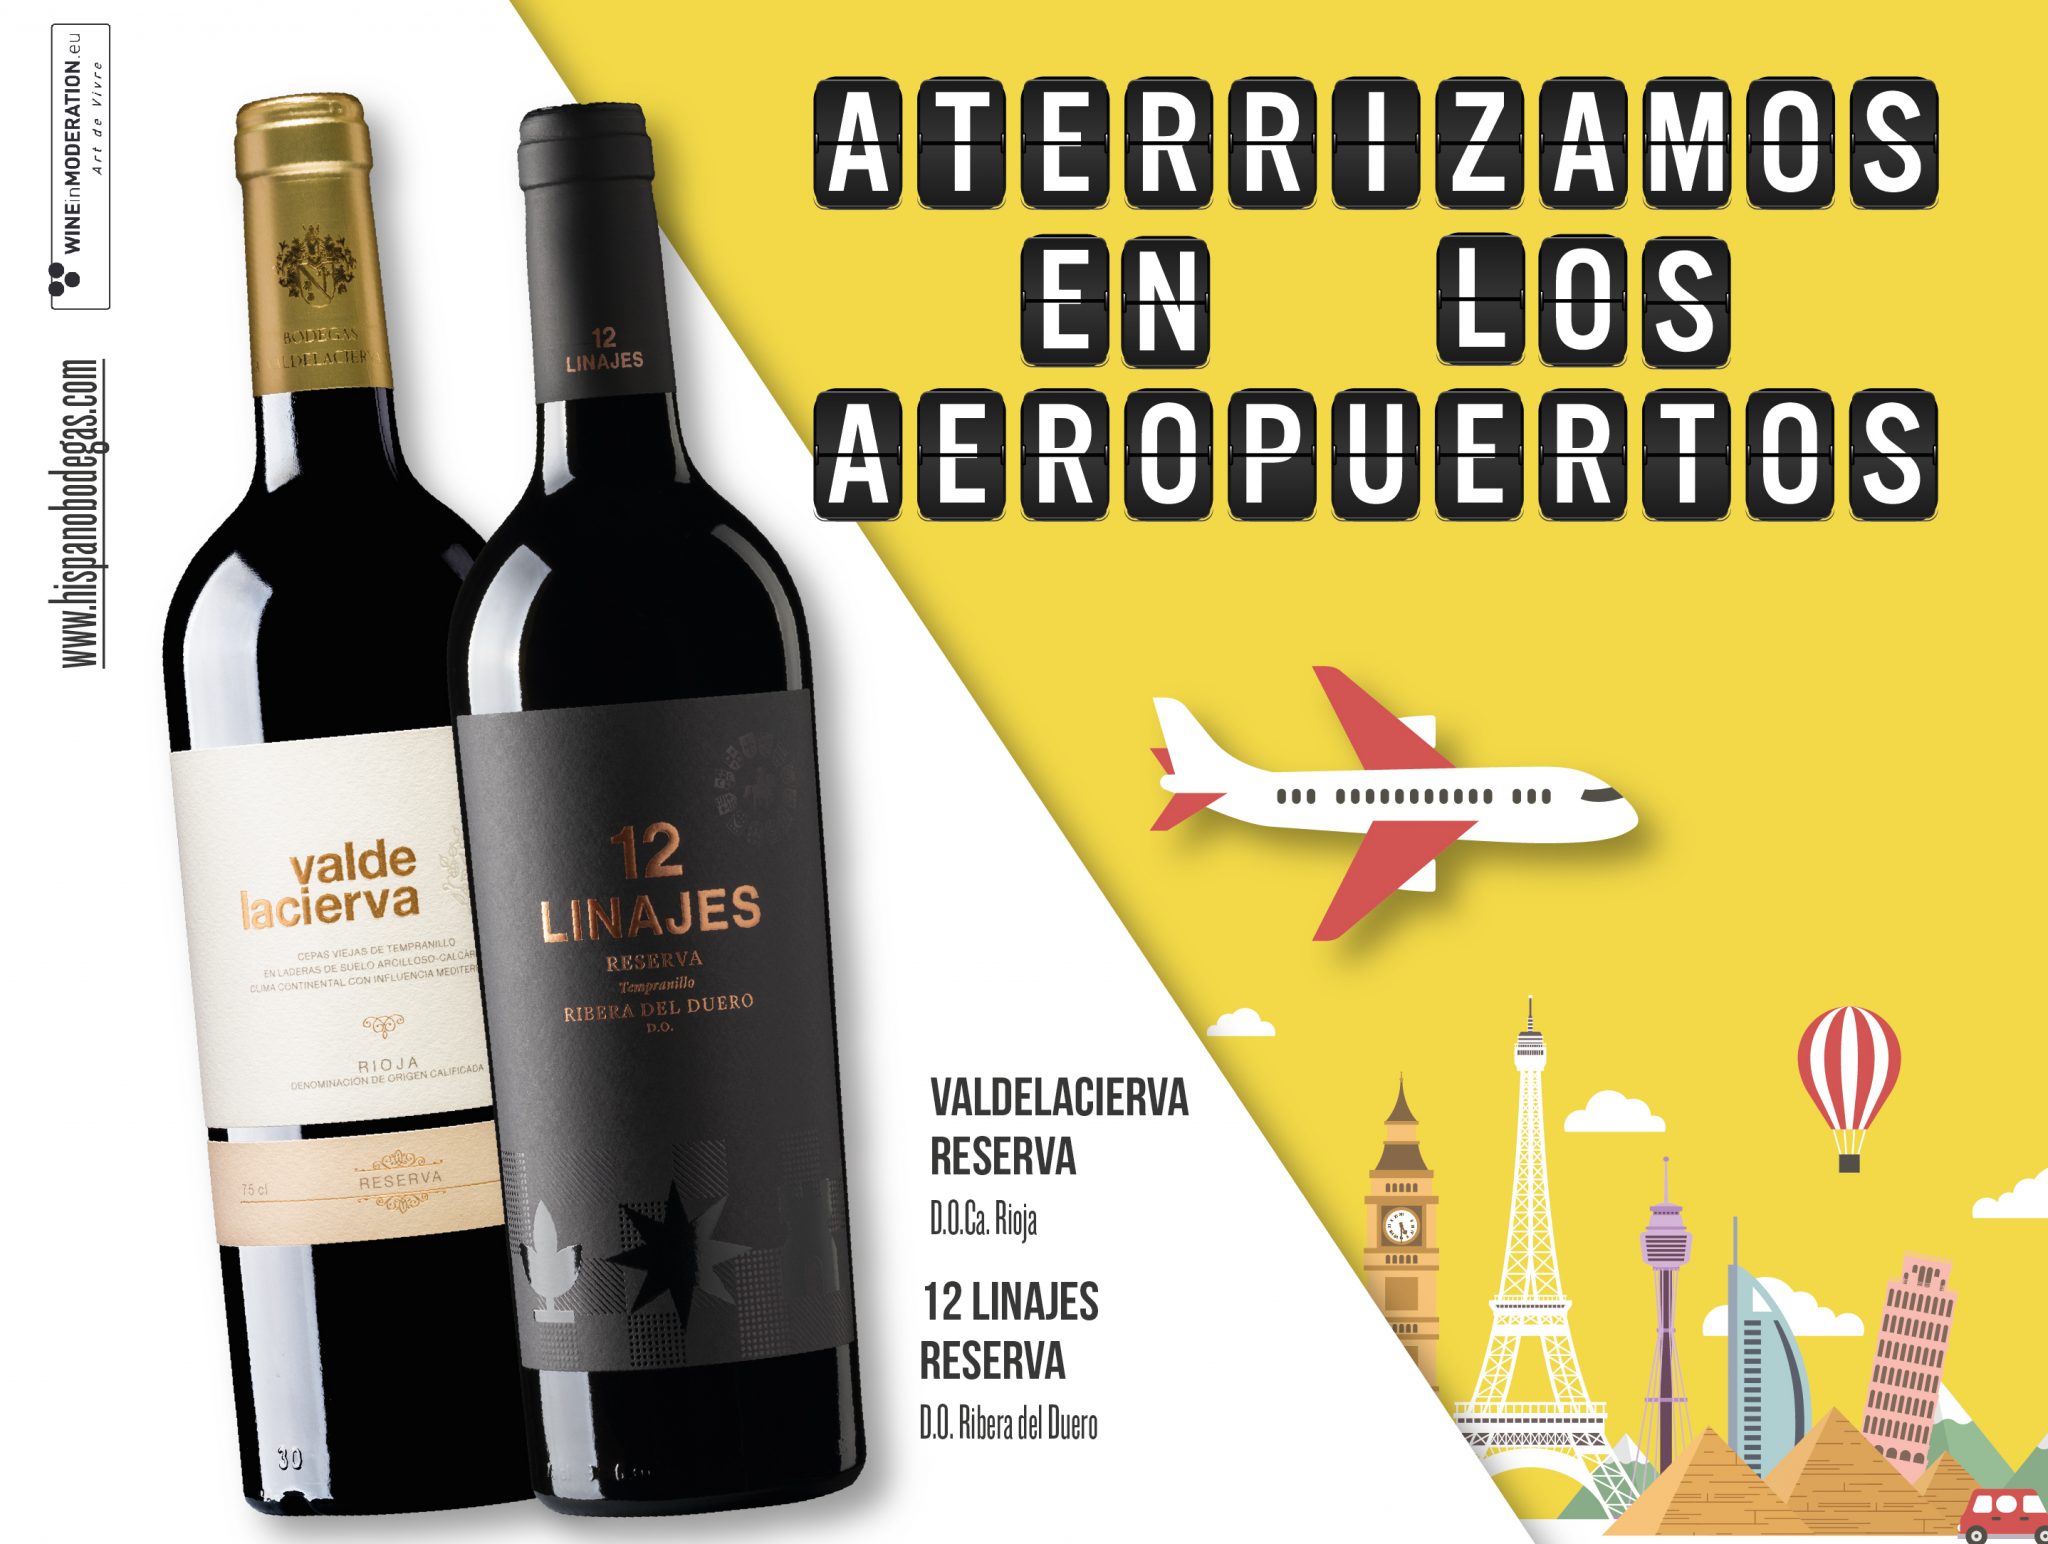 12 Linajes Reserva y Valdelacierva Reserva “aterrizan” en los aeropuertos españoles